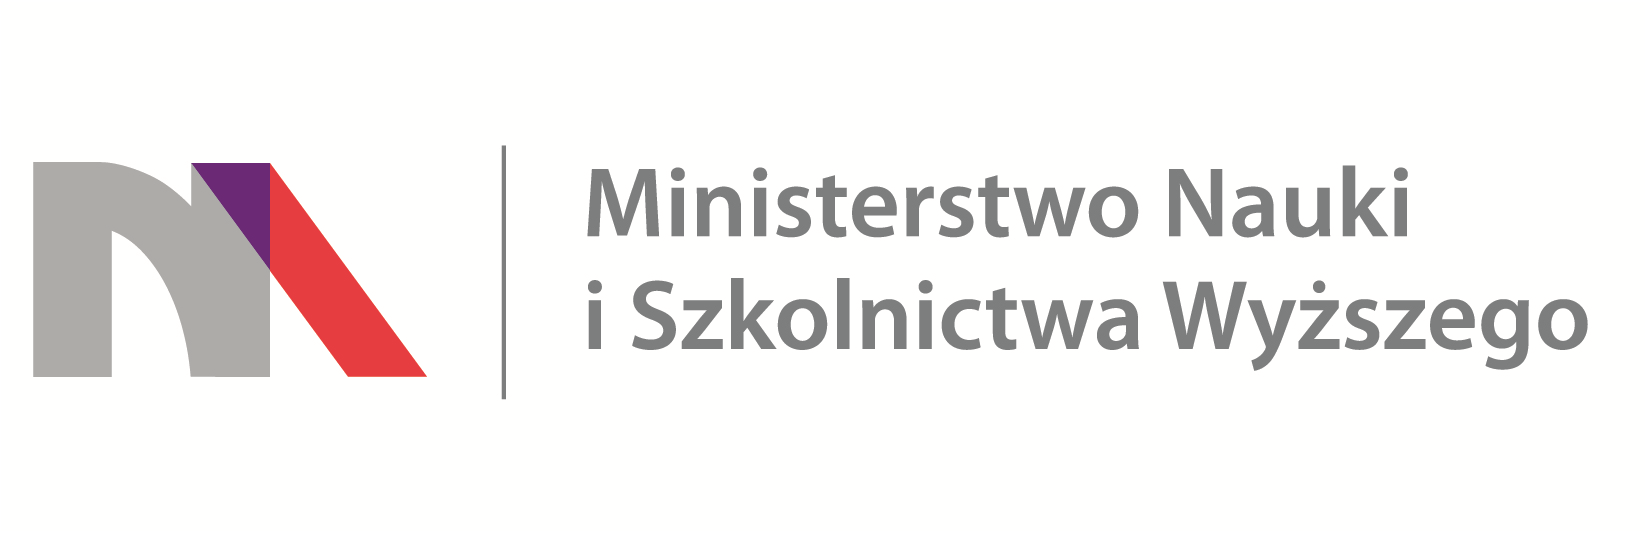 Ministerstwo Nauki i Szkolnictwa Wyższego (logo)